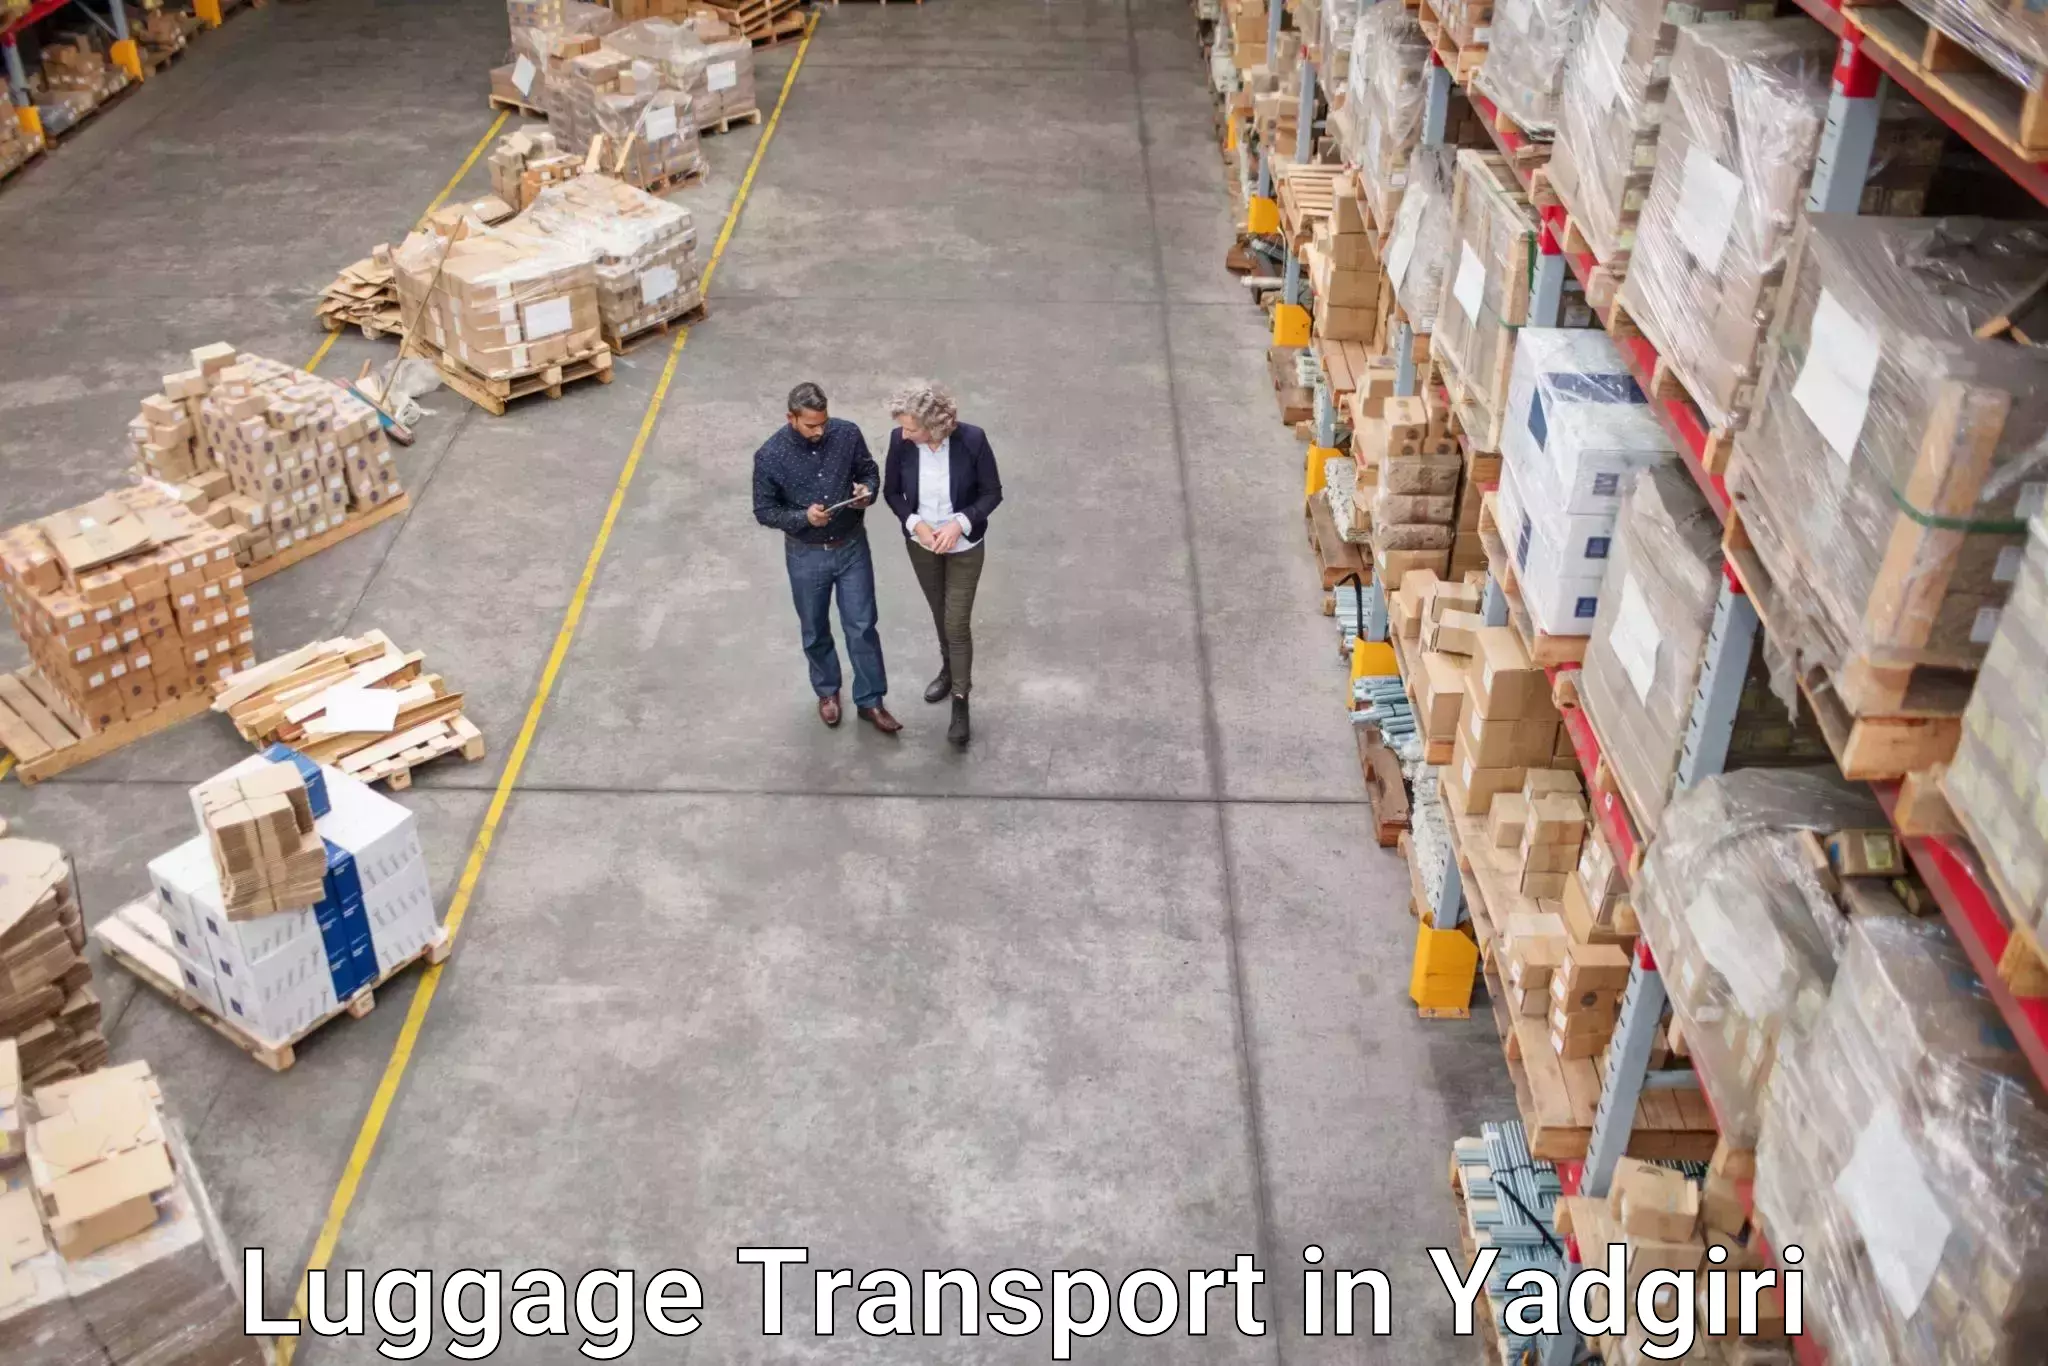 Hotel to Door baggage transport in Yadgiri